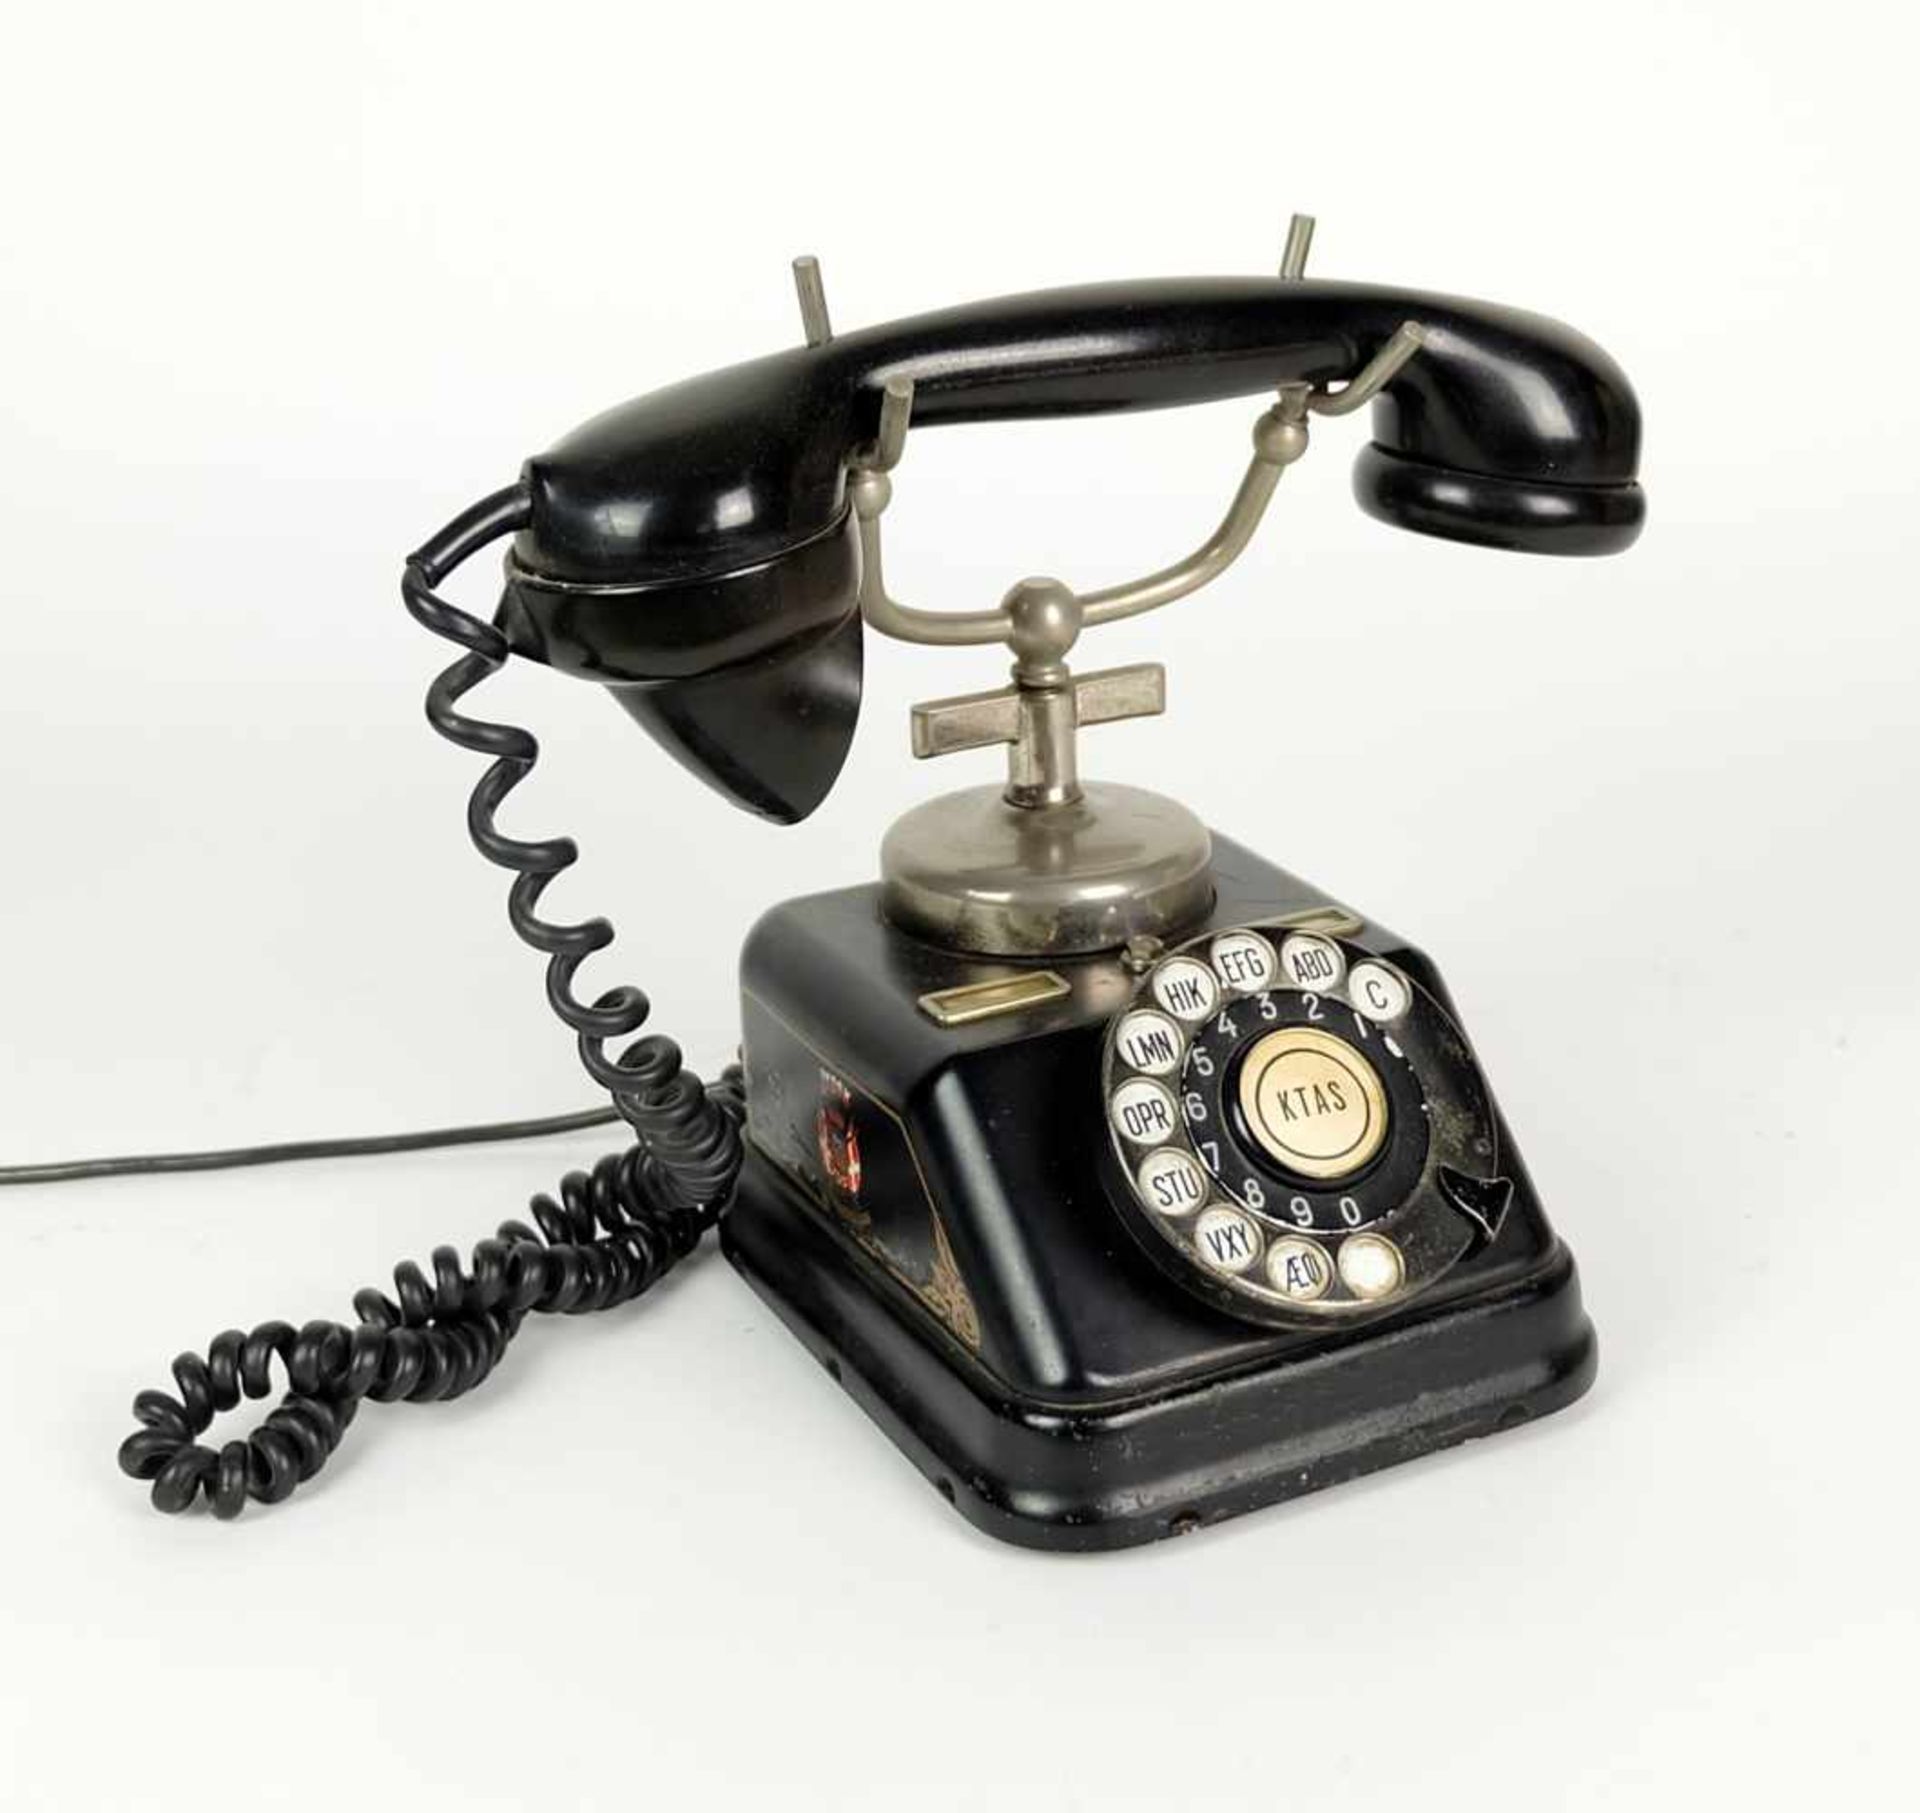 FERNSPRECHER/ TELEFON, Herst. Jydsk Ktas/ Kopenhagen, 1920er/ 30er Jahre, Bakelit, schwarzes Blech